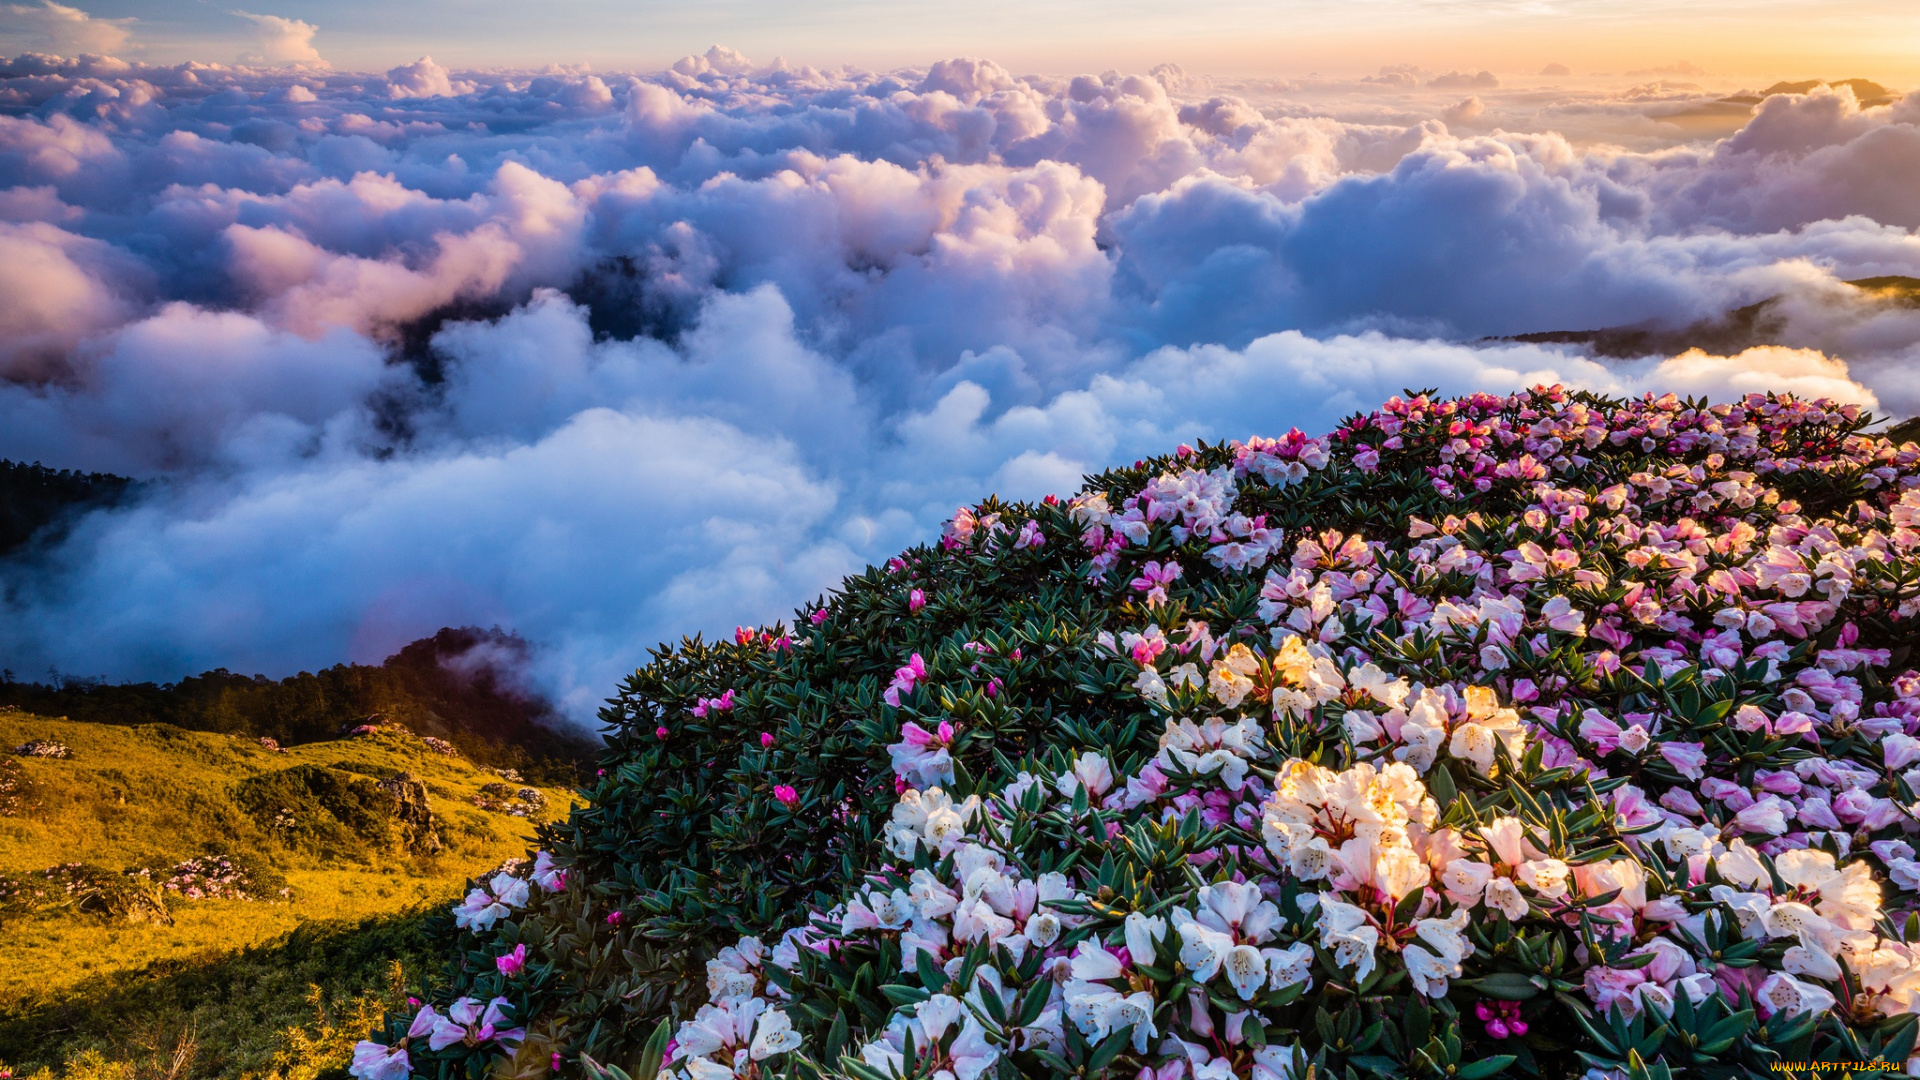 природа, облака, грандиозно, пейзаж, горы, цветы, красота, небо, весна, туман, холм, кусты, рододендроны, вид, цветение